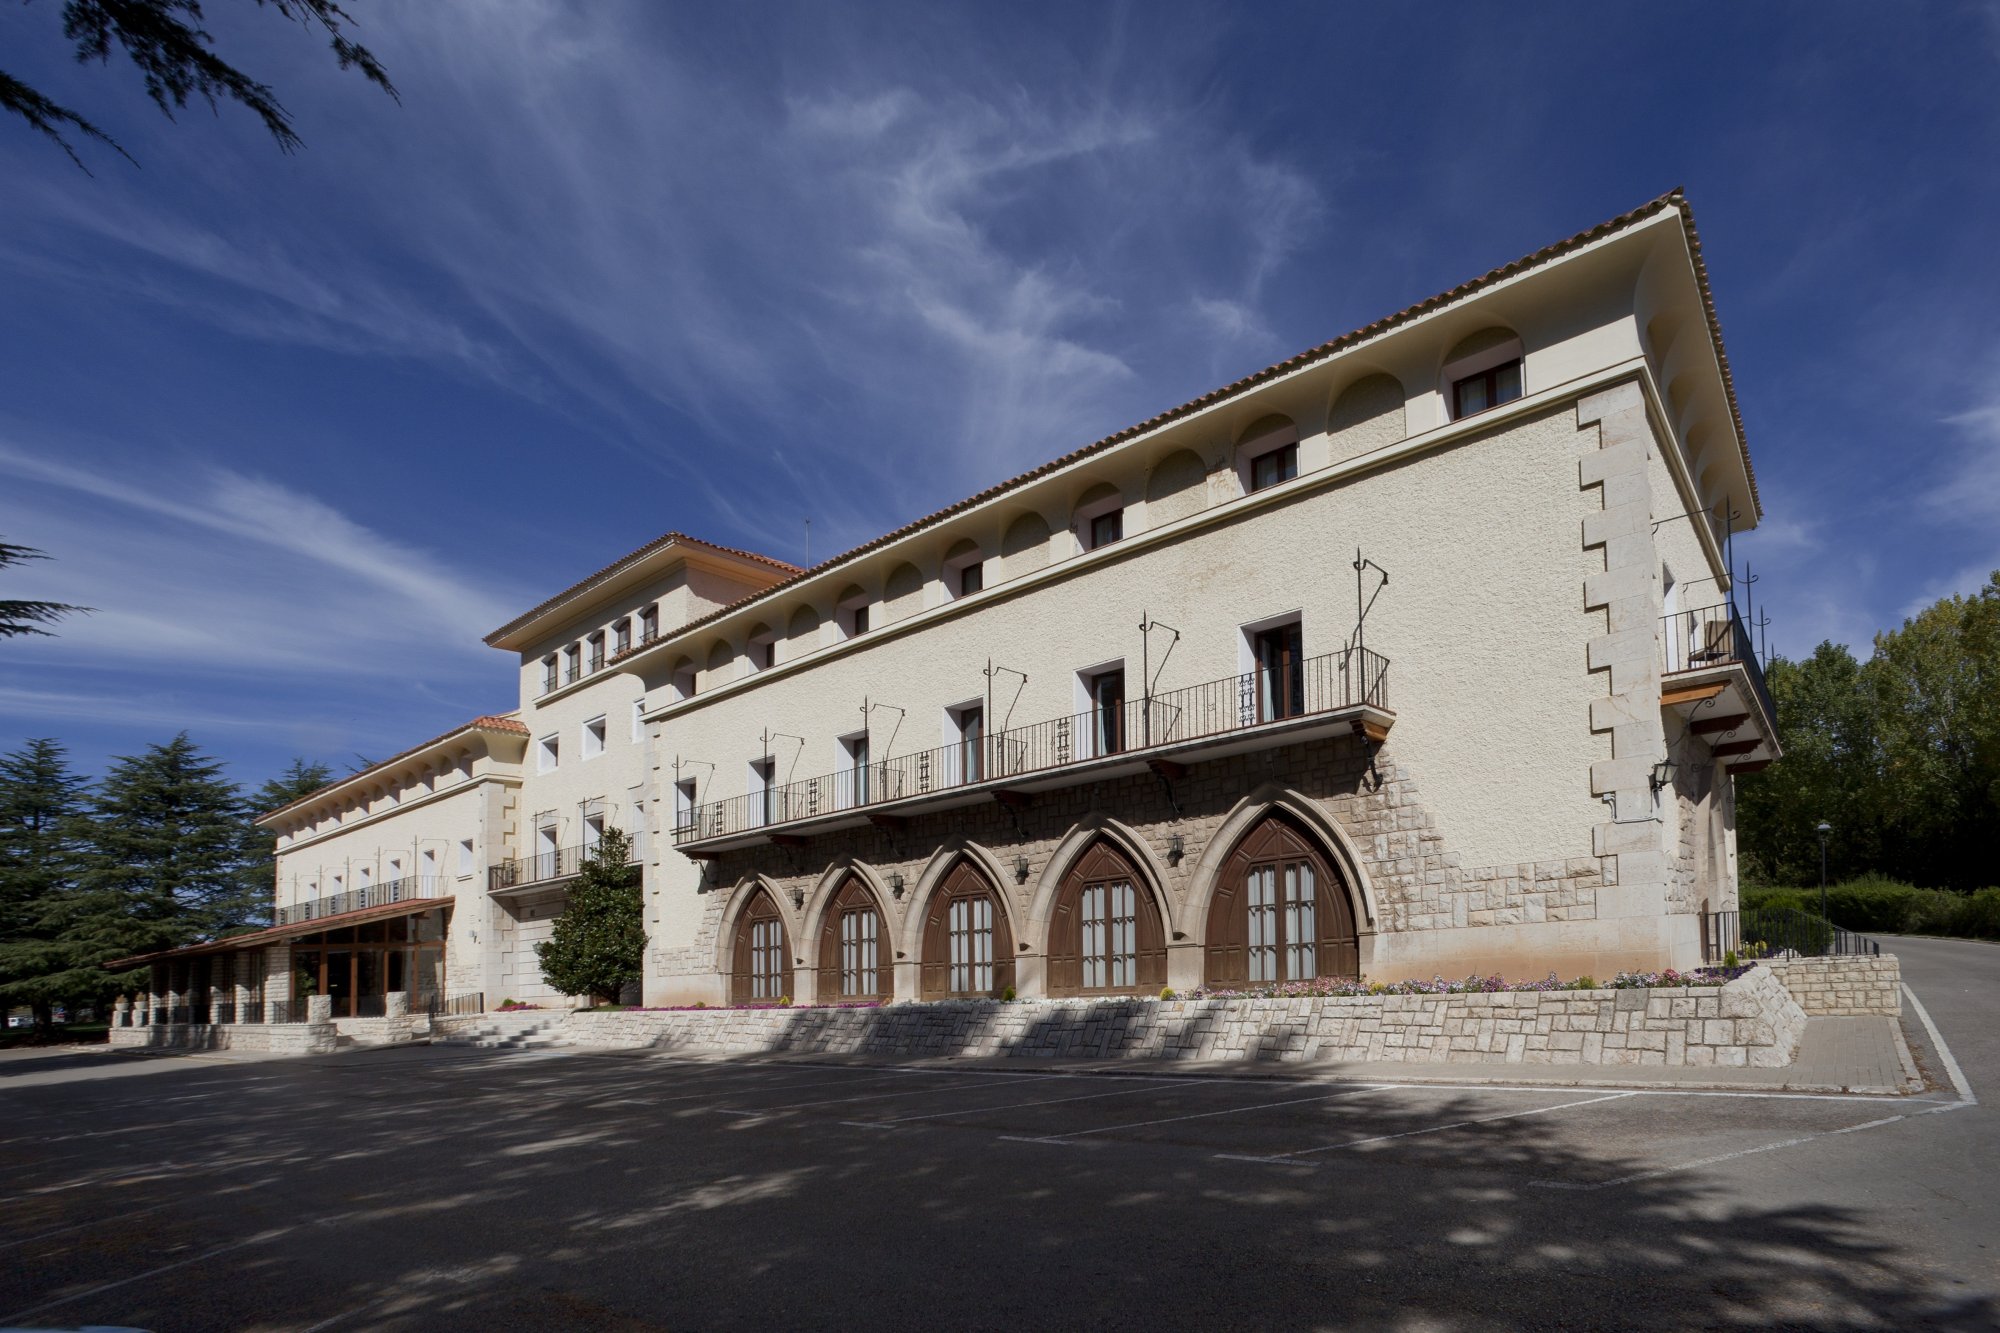 Edificio principal del Parador de Teruel, con sus características arcos ojivales